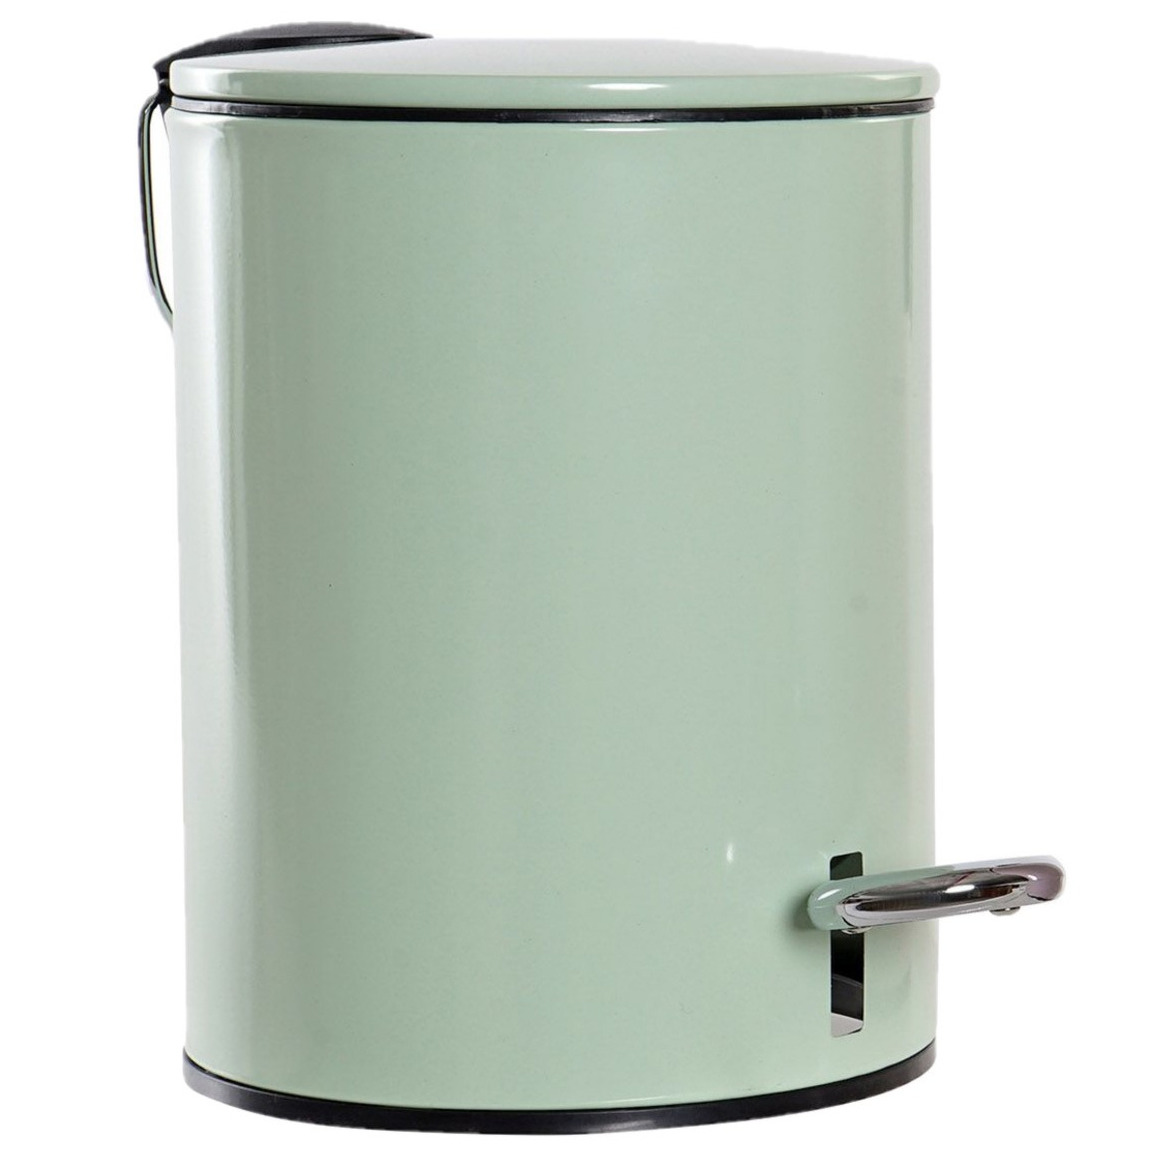 Metalen vuilnisbak-pedaalemmer groen 3 liter 23 cm